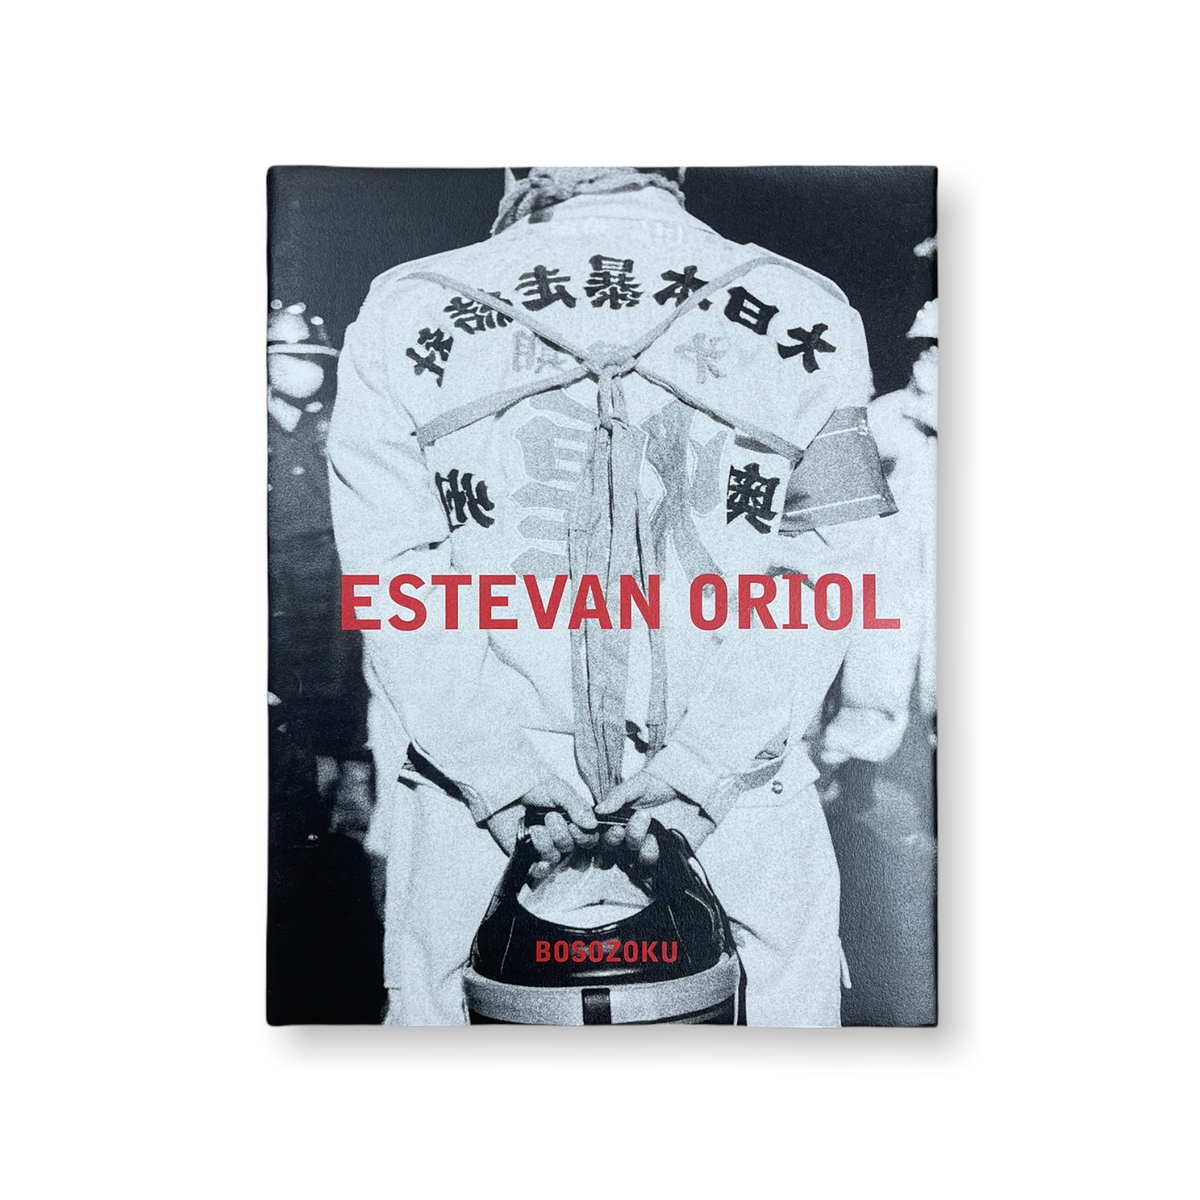 BOSOZOKU: JAPANESE BIKER GANGS BY ESTEVAN ORIOL (SIGNED 